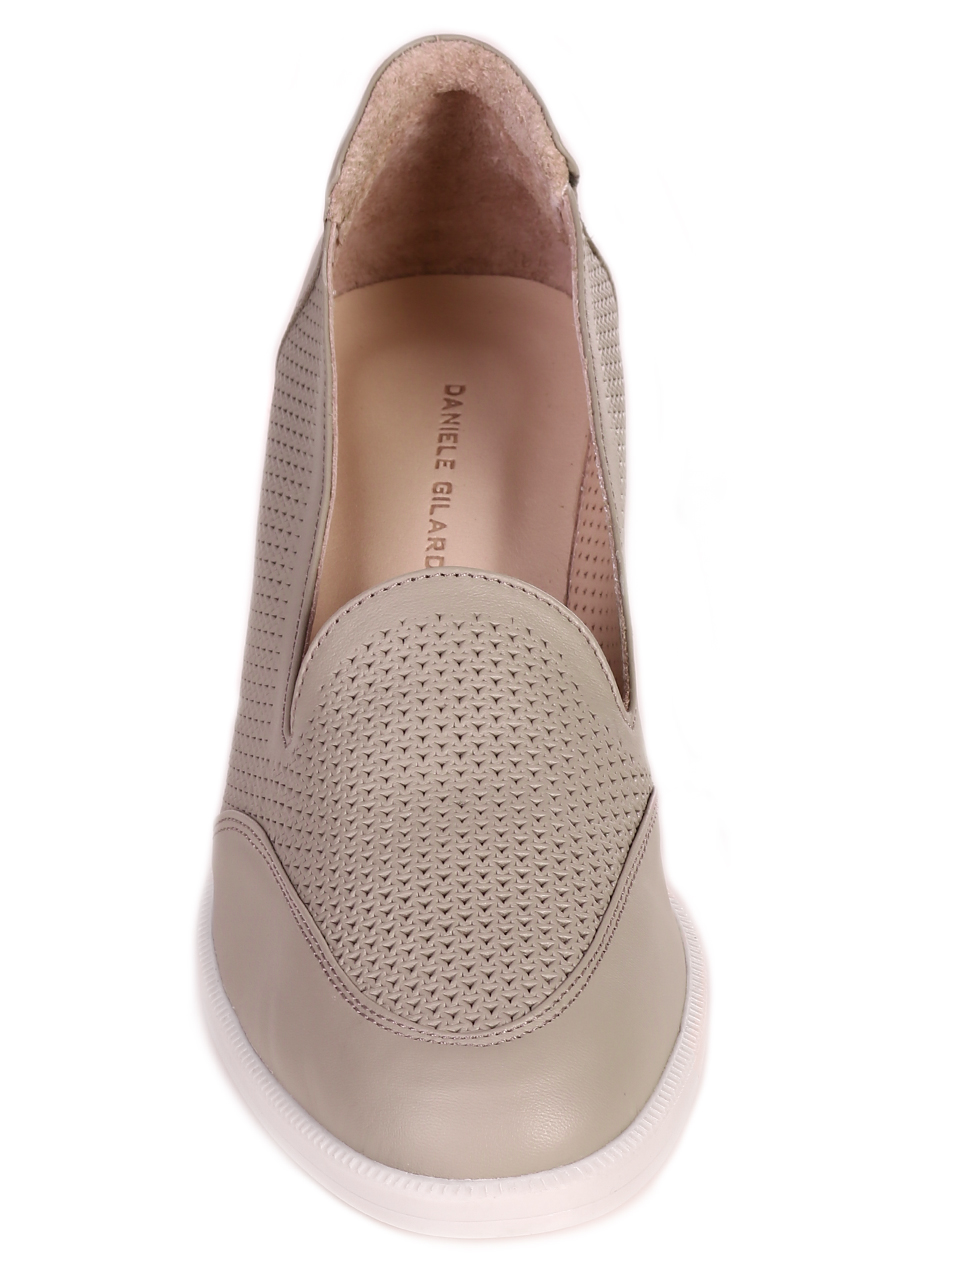 Ежедневни дамски обувки на платформа от естествена кожа 3AT-23283 beige